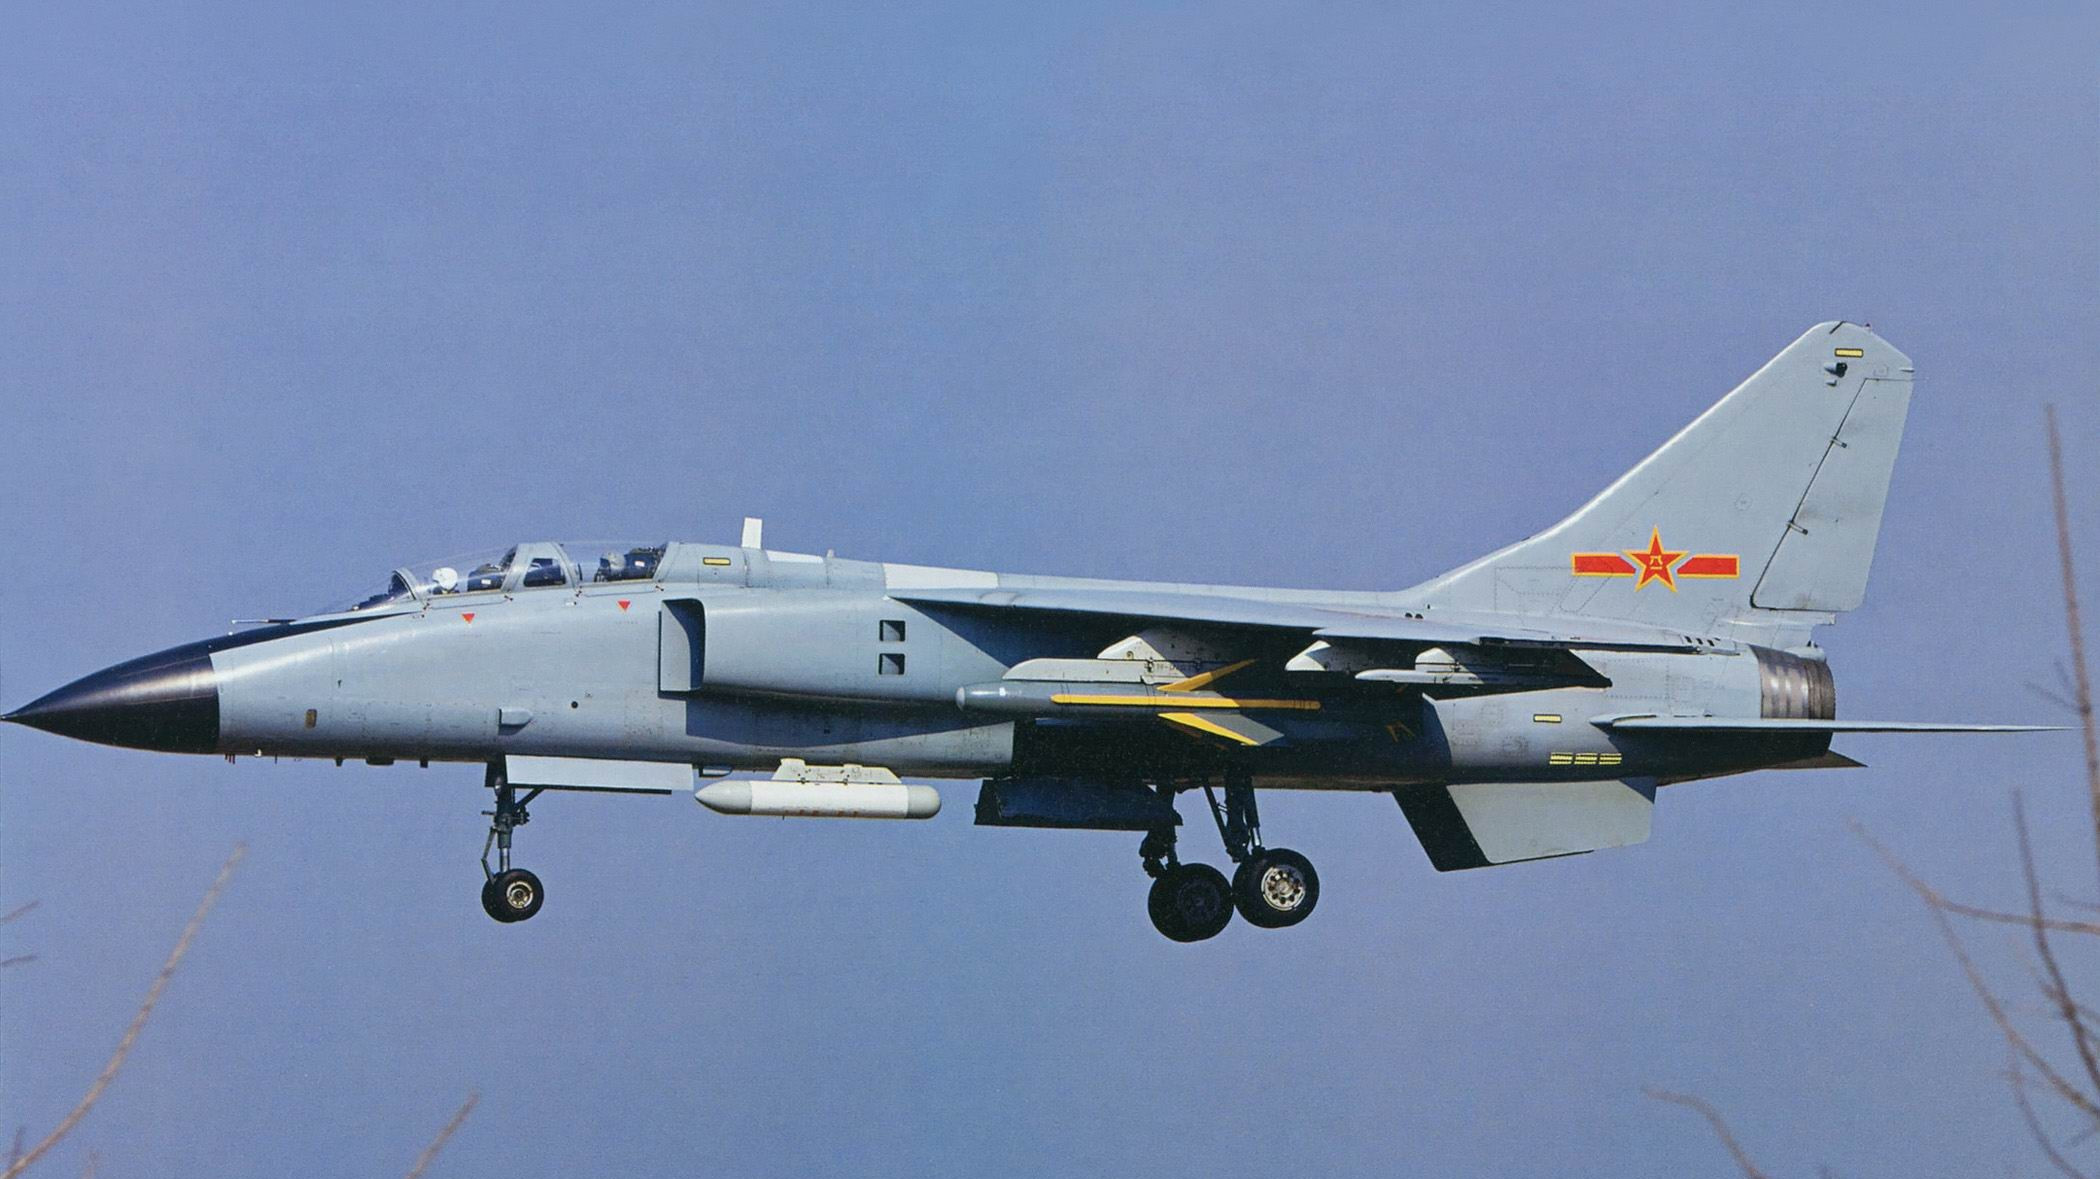 歼轰-7a:中国海军航空兵主力歼击轰炸机 具备强大的饱和攻击力